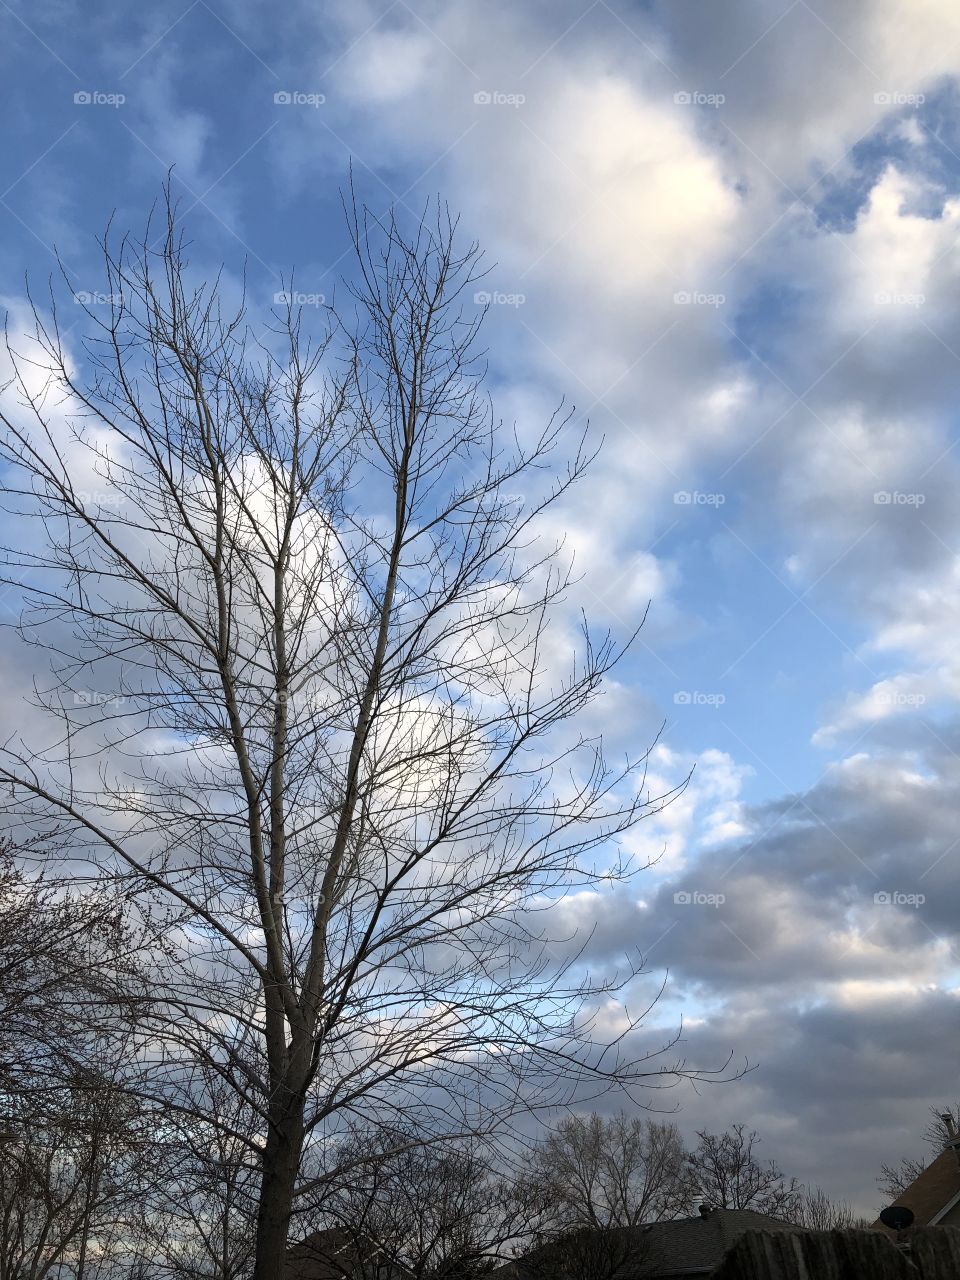 Clouds n tree sky